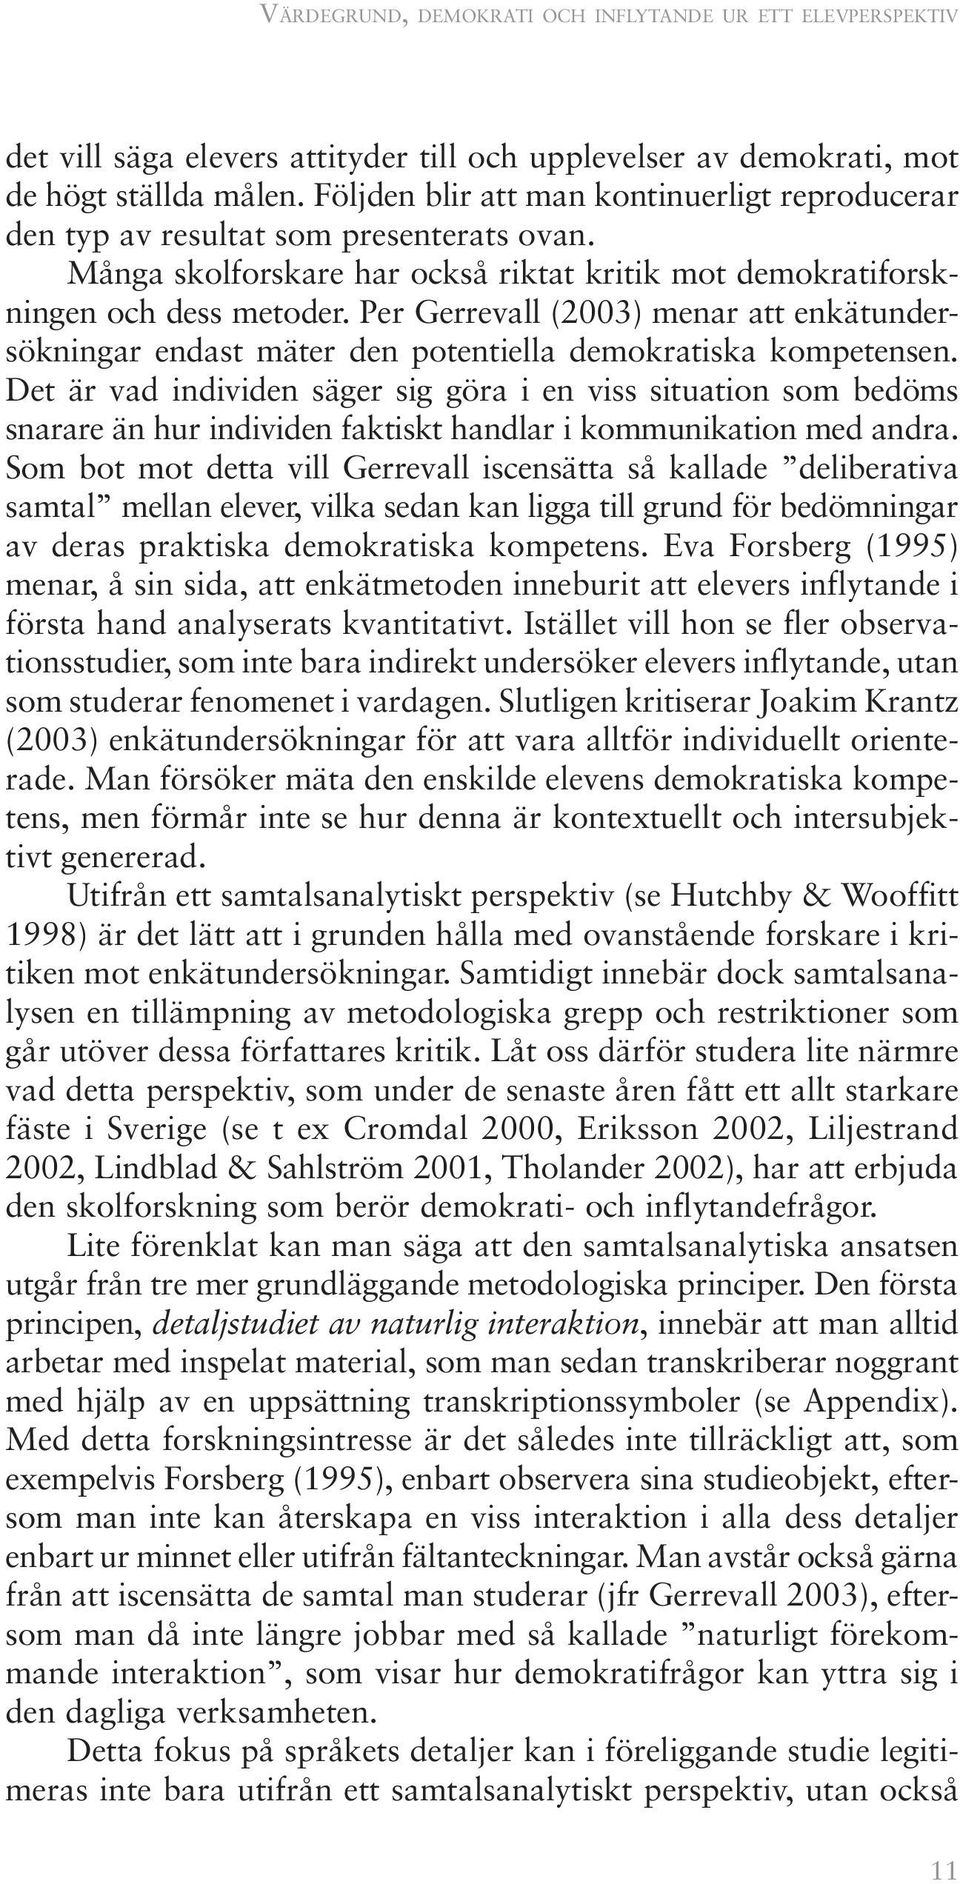 Per Gerrevall (2003) menar att enkätundersökningar endast mäter den potentiella demokratiska kompetensen.